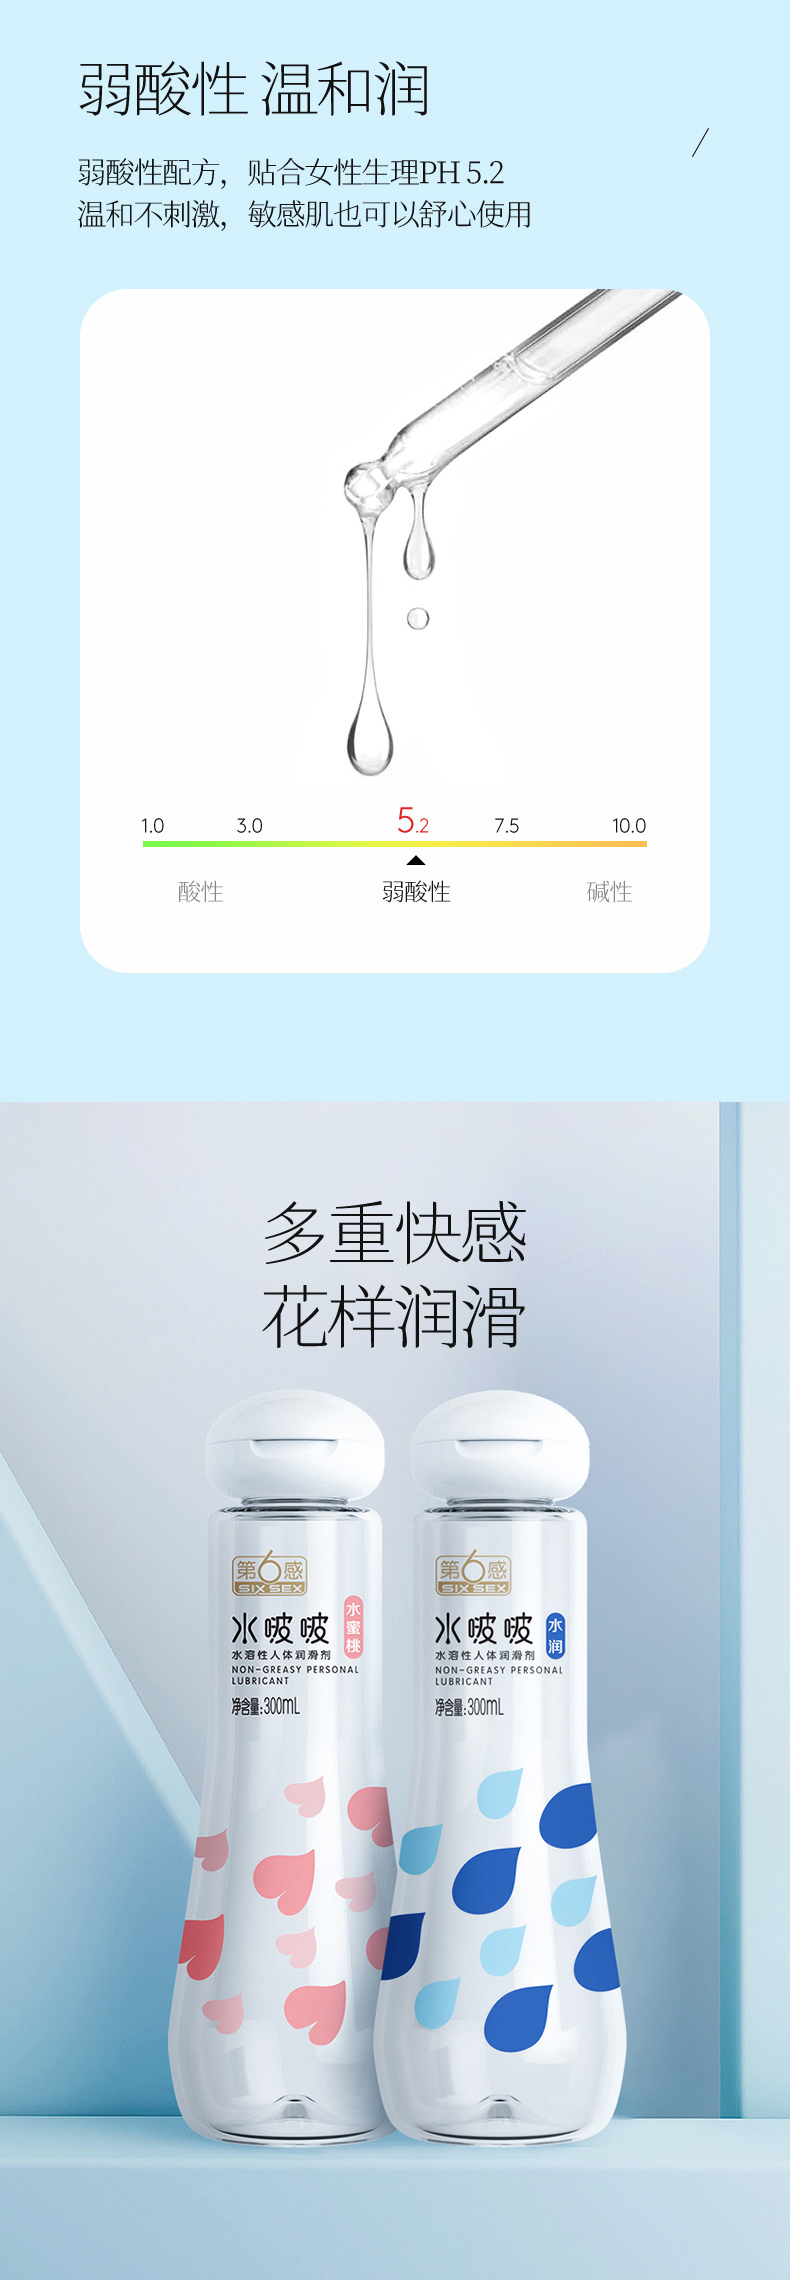 趣爱阁-广州成人用品批发人体润滑液：第6感水啵啵润滑剂300ml人体润滑液